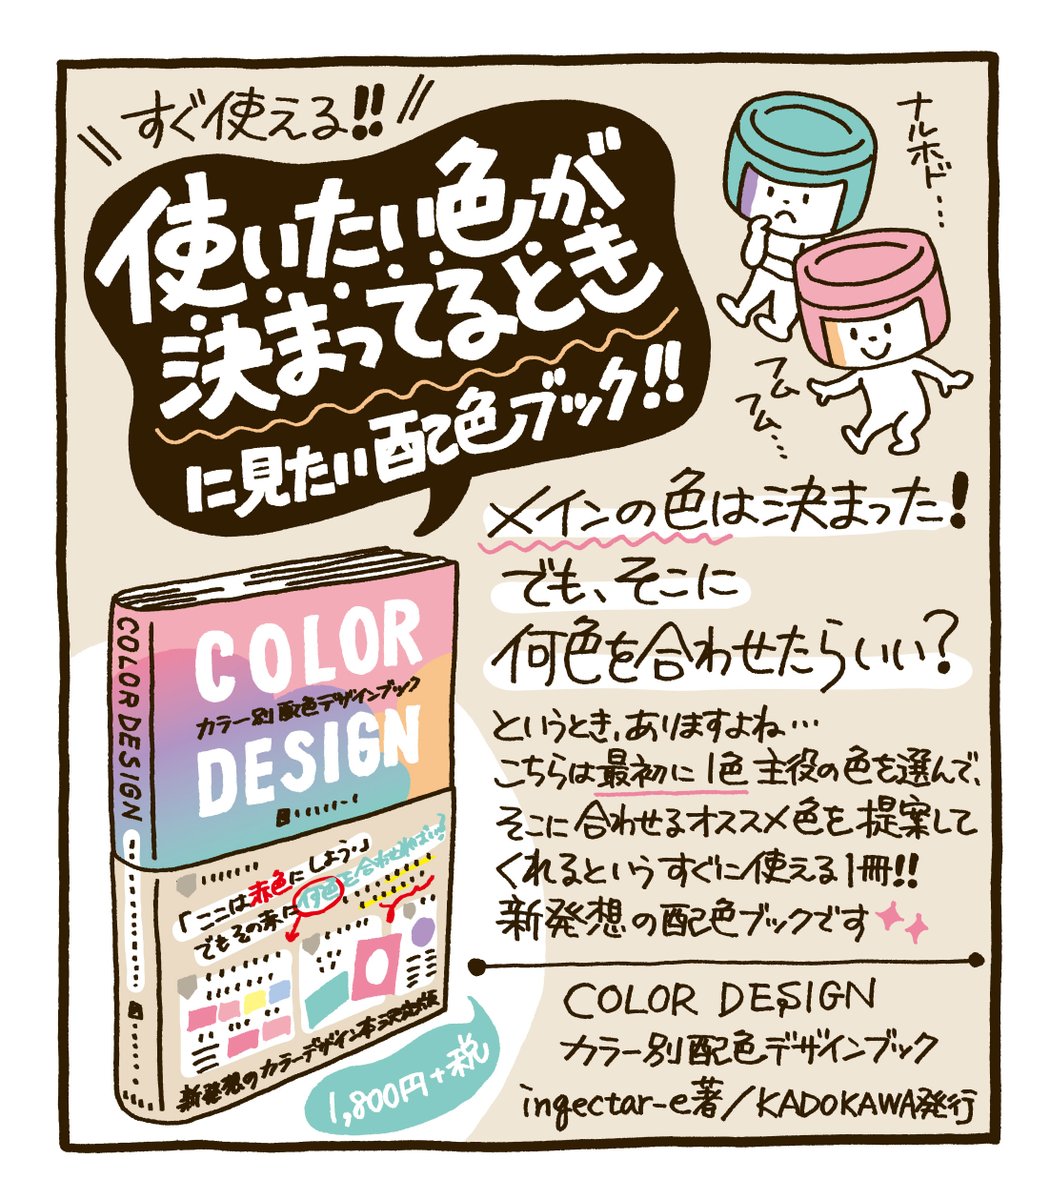 「使いたい色が既に決まっている」「そこに何色を合わせたらいいか悩む」というとき、ありませんか?そんなときにピッタリの本『COLOR DESIGN カラー別配色デザインブック』をゲット?✨同じ色ひとつとってもかなりのバリエーション!3色本等でおなじみのingectar-eさん著。さっそく仕事で大活躍です? 